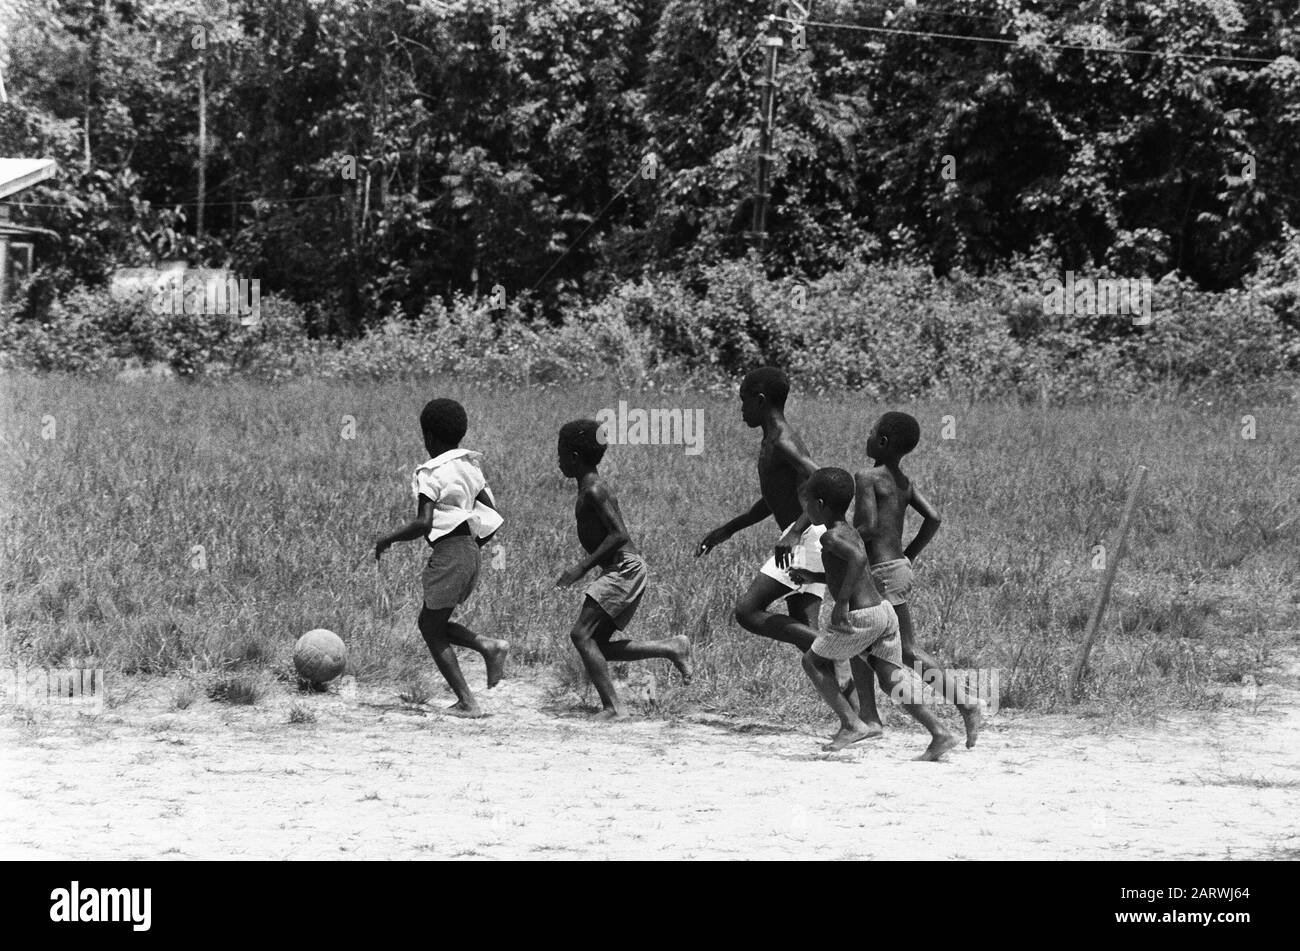 Suriname, Bosland lana e indiani; ragazzi di calcio Data: 1 aprile 1975 Foto Stock